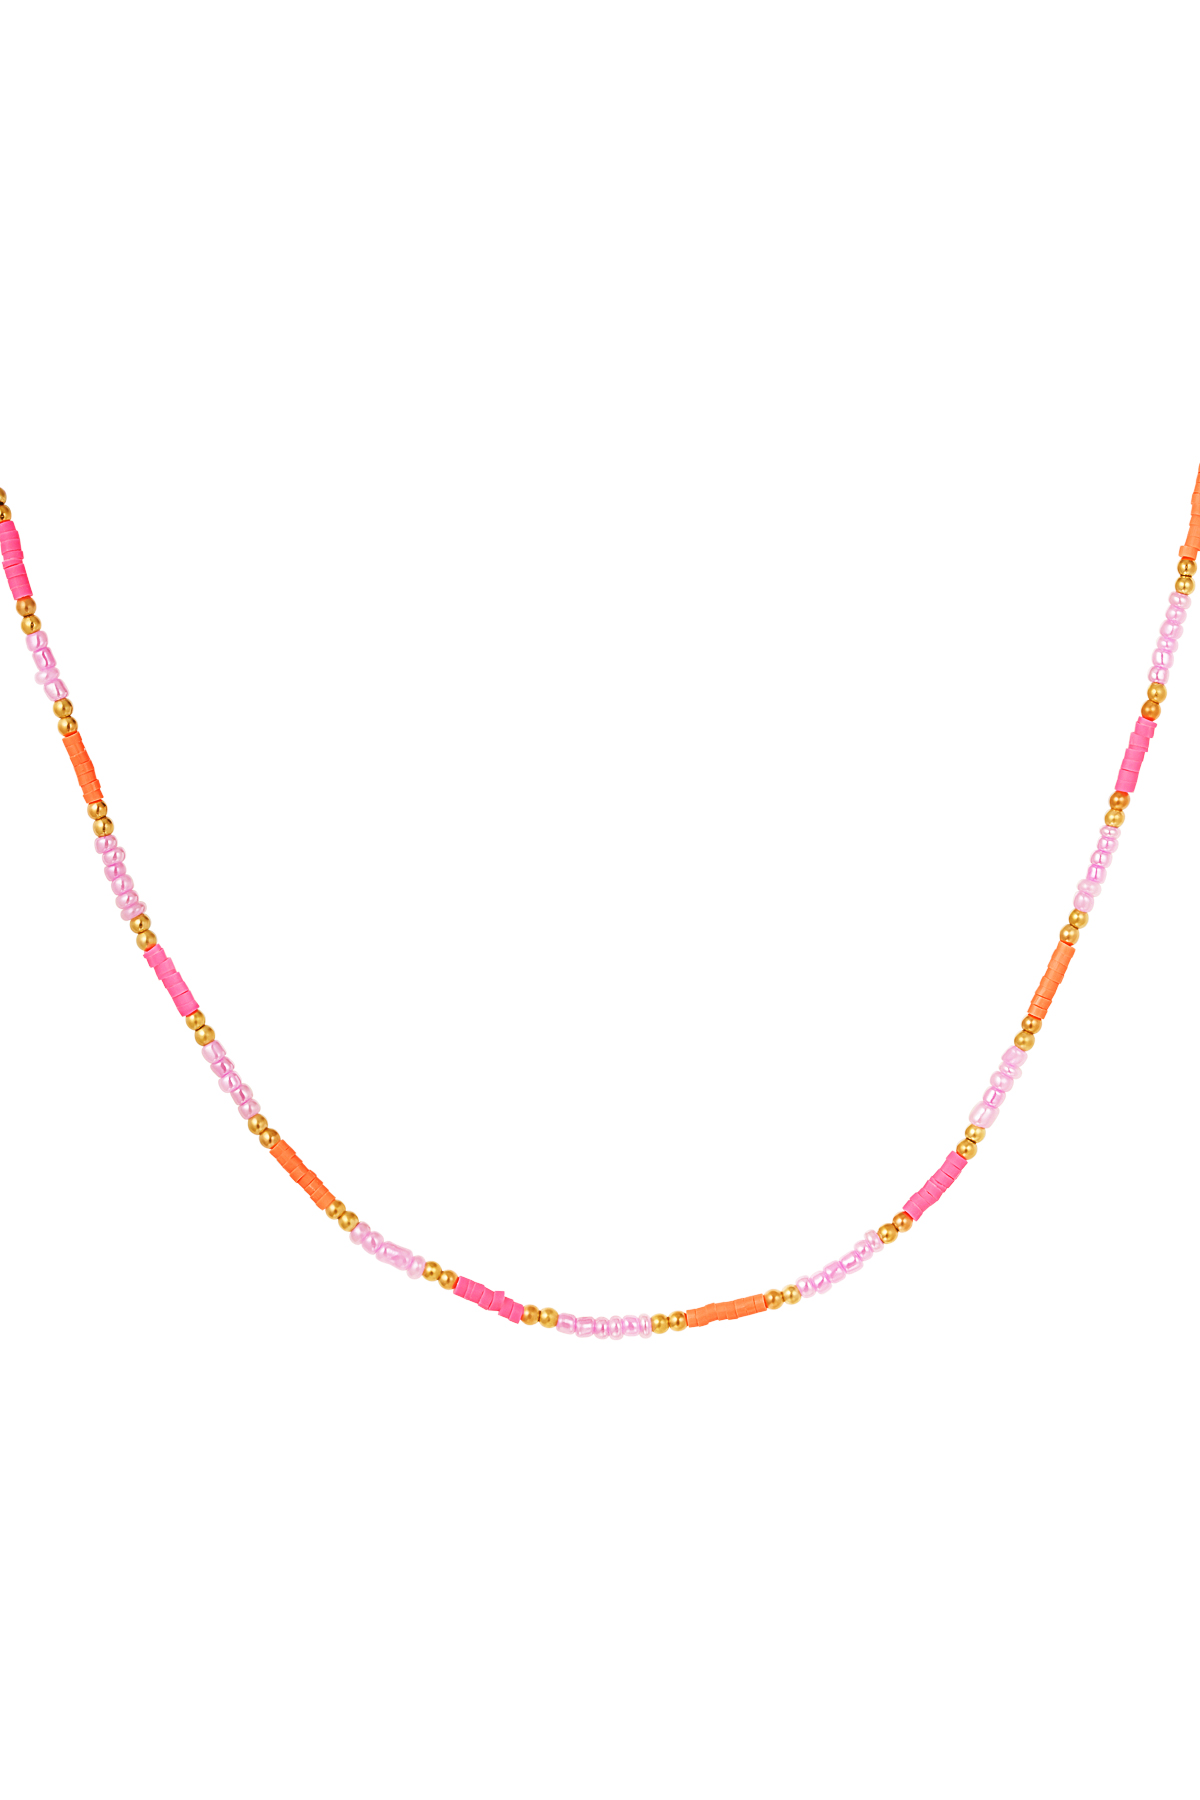 Halskette kleine bunte Perlen - rosa/orange